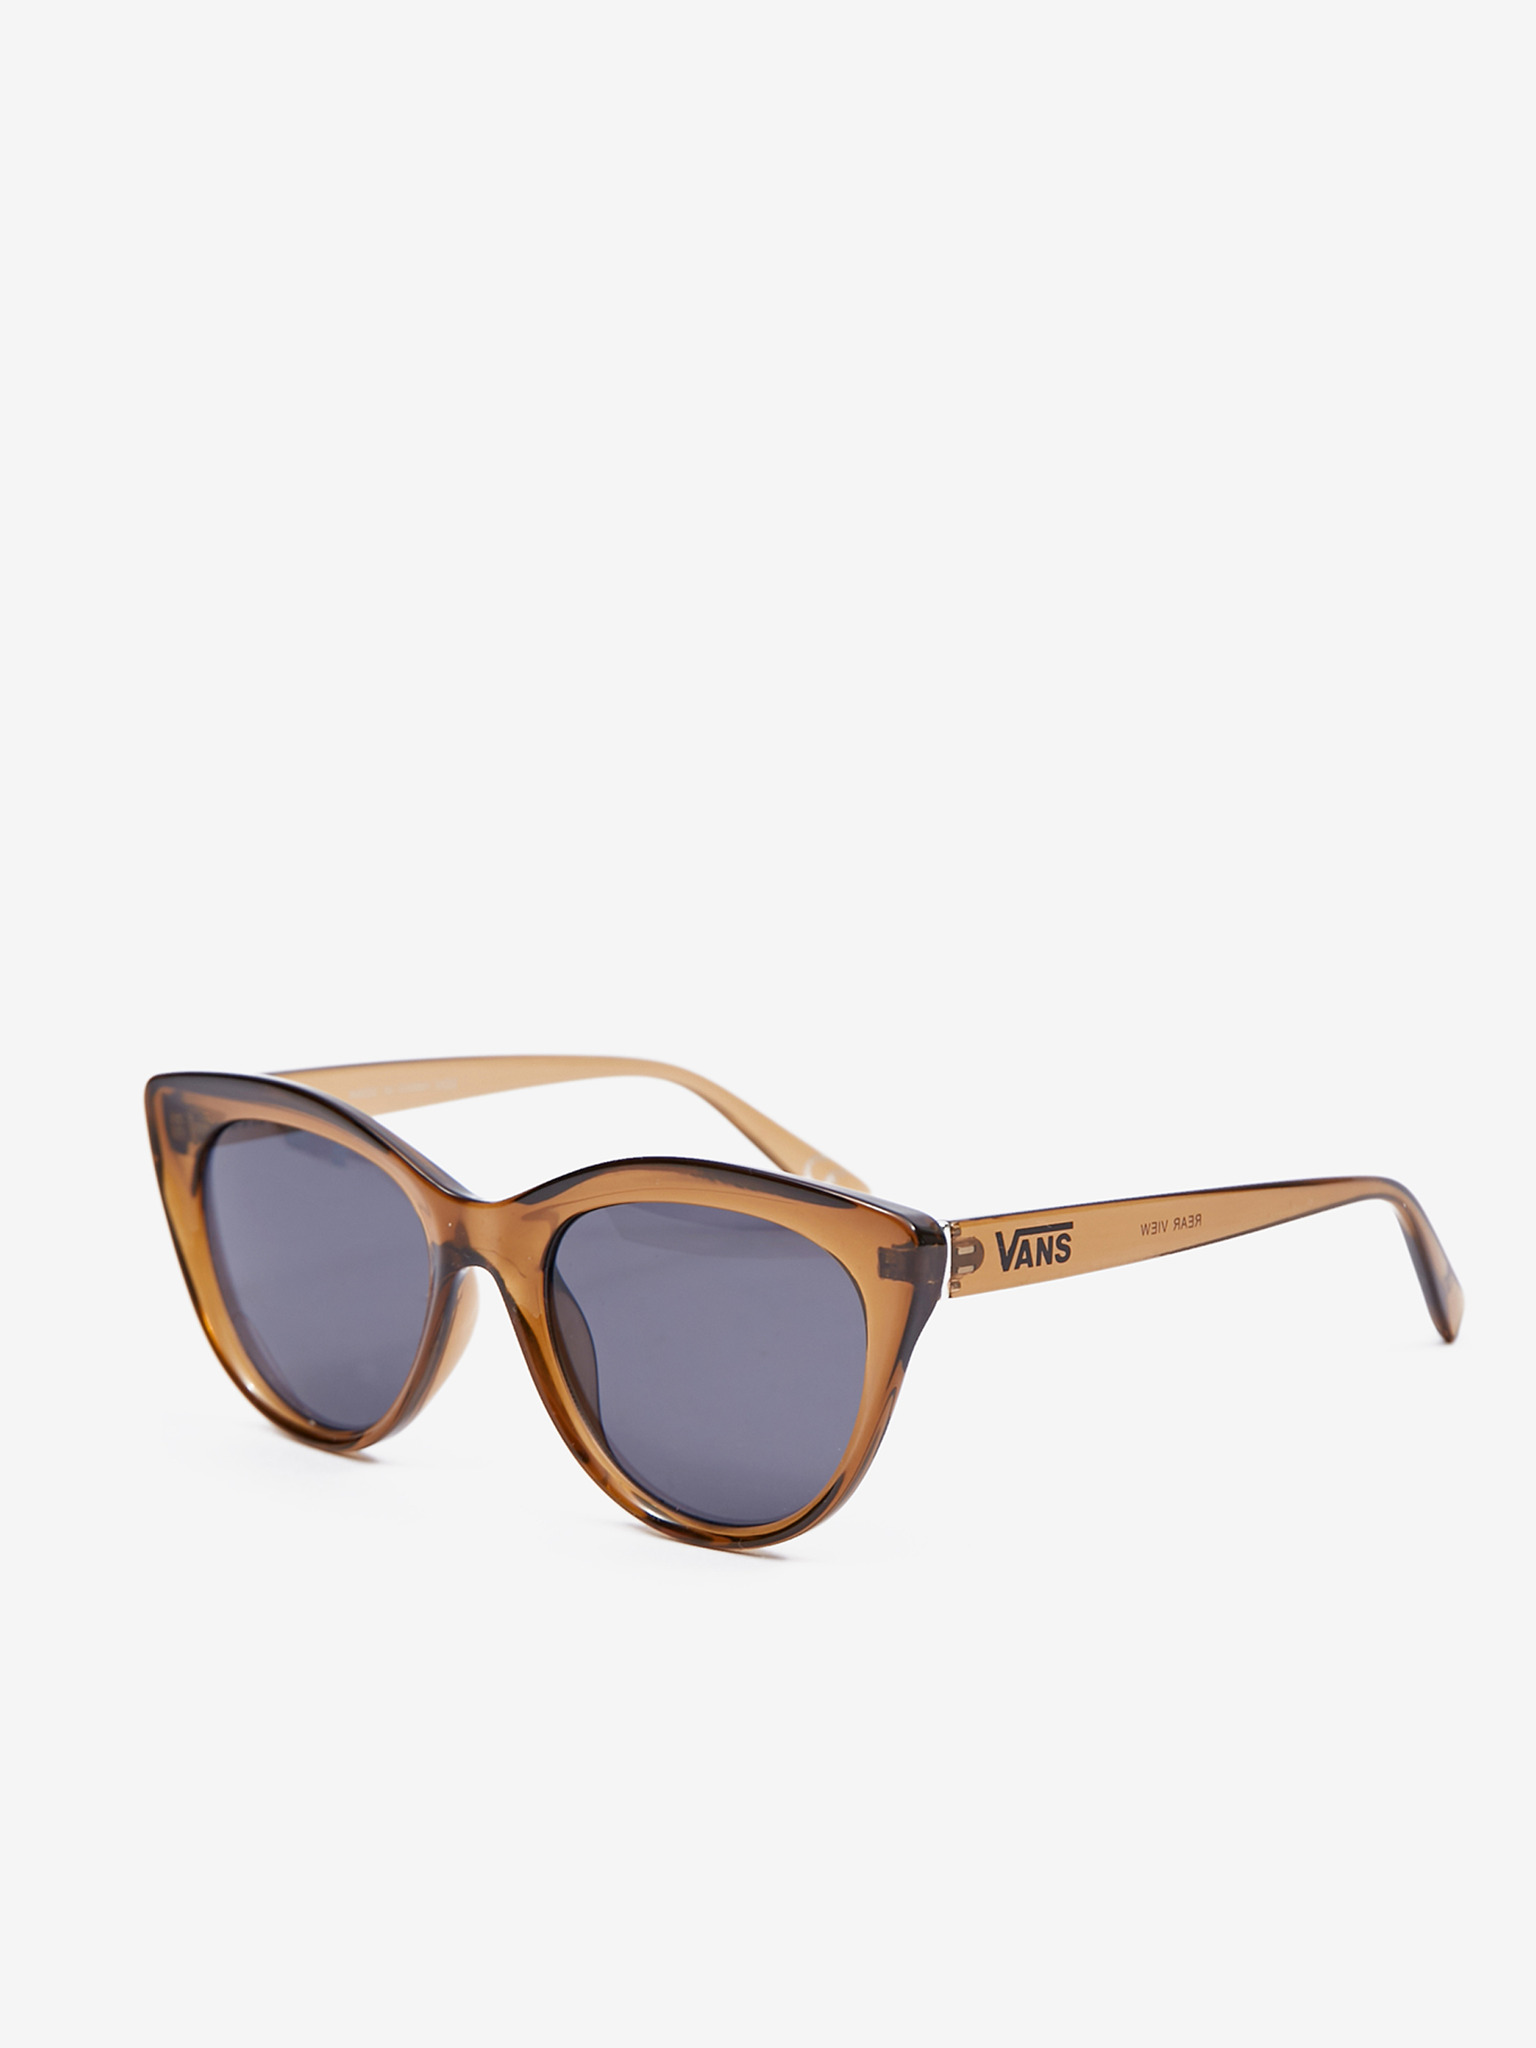 Buy Sunglasses for Women Online - Round, Full Rim, Blue Frame for Stylish  Look - NV2818 | Nova Eyewear